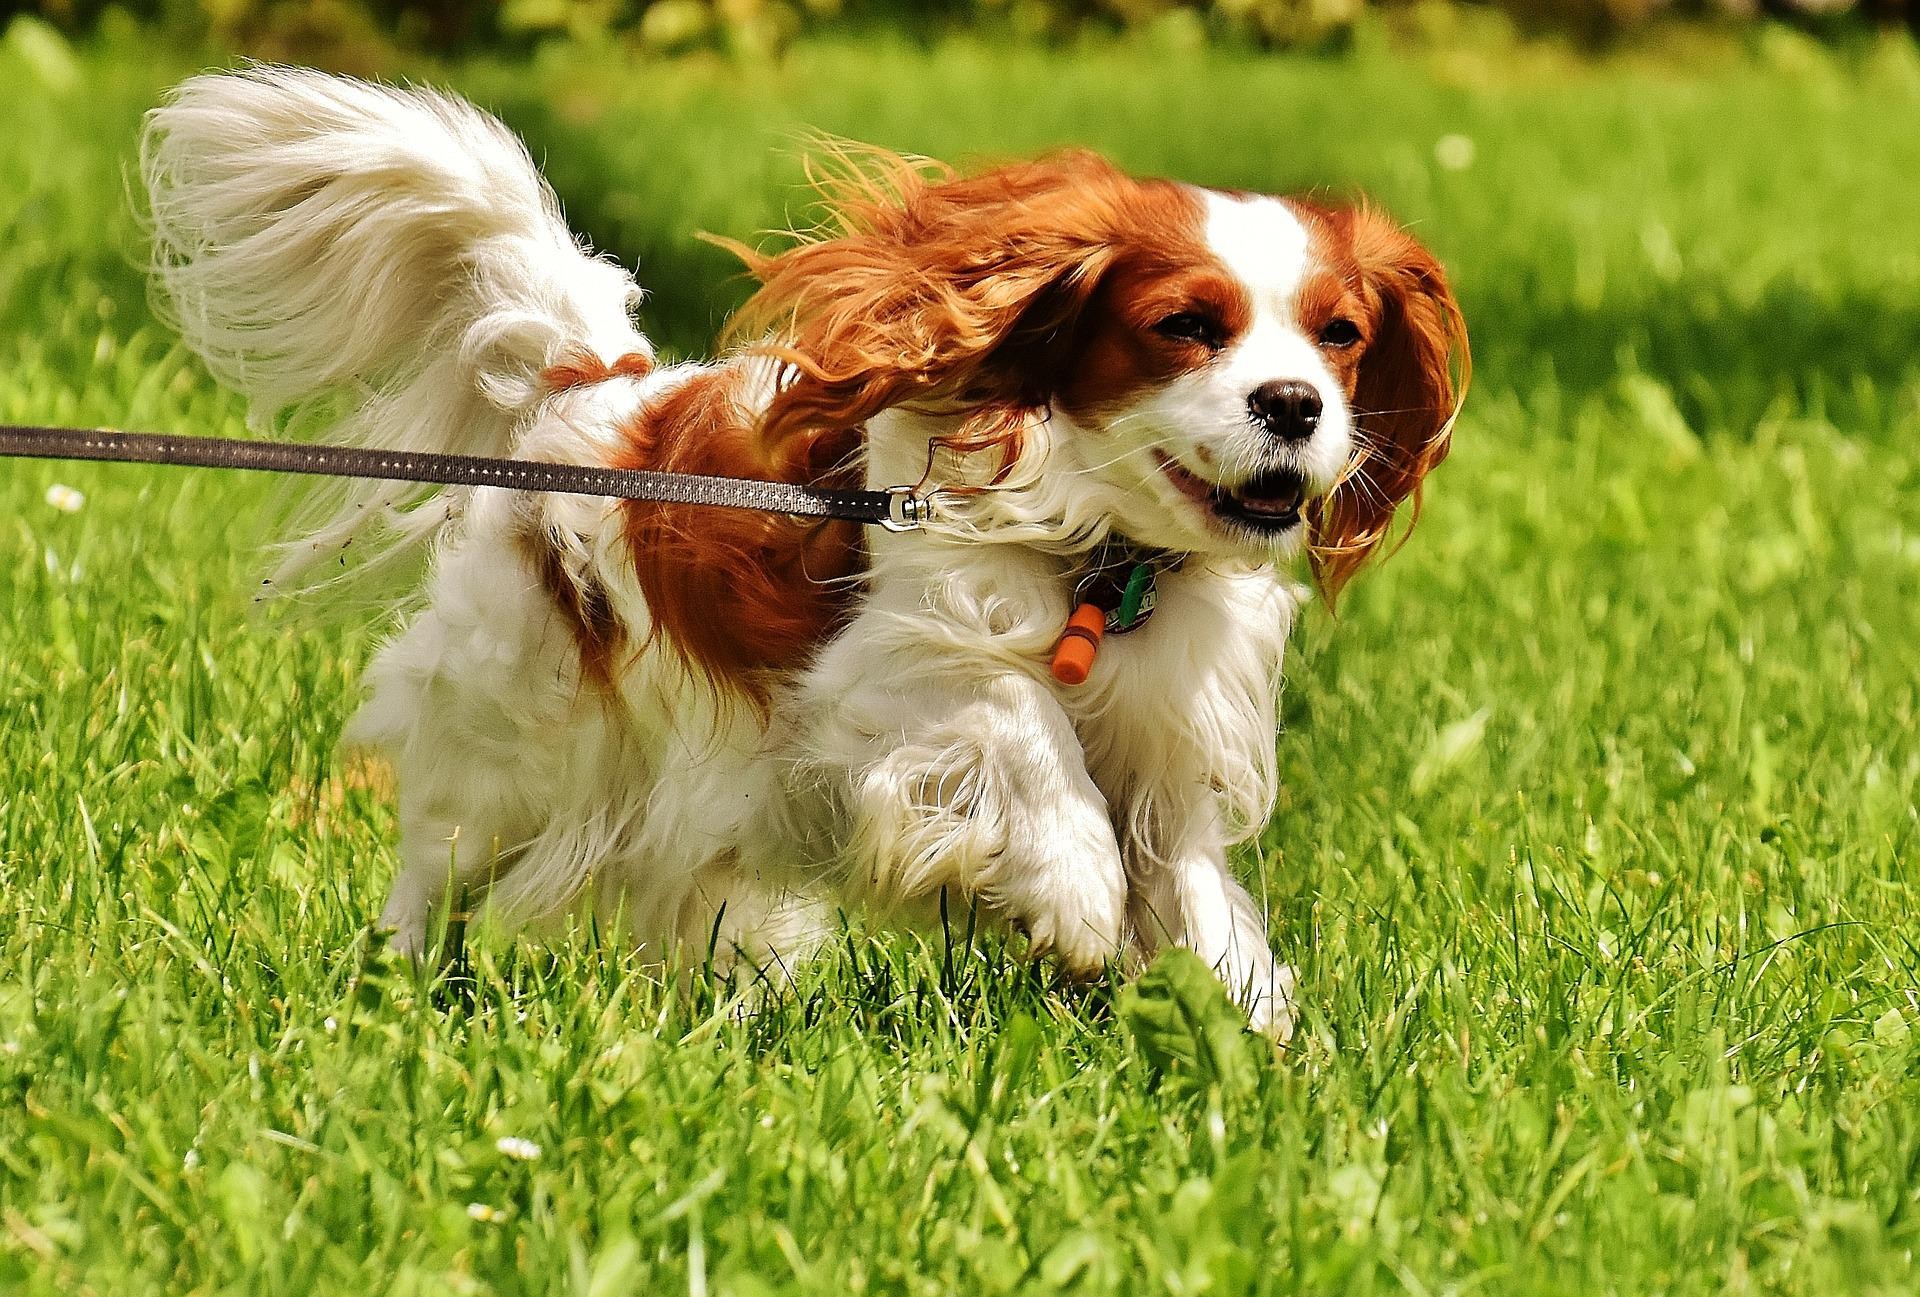 Brincadeiras e passeios são o suficiente para manter esse animal ativo (Foto: Pixabay/Alexa/CreativeCommons)